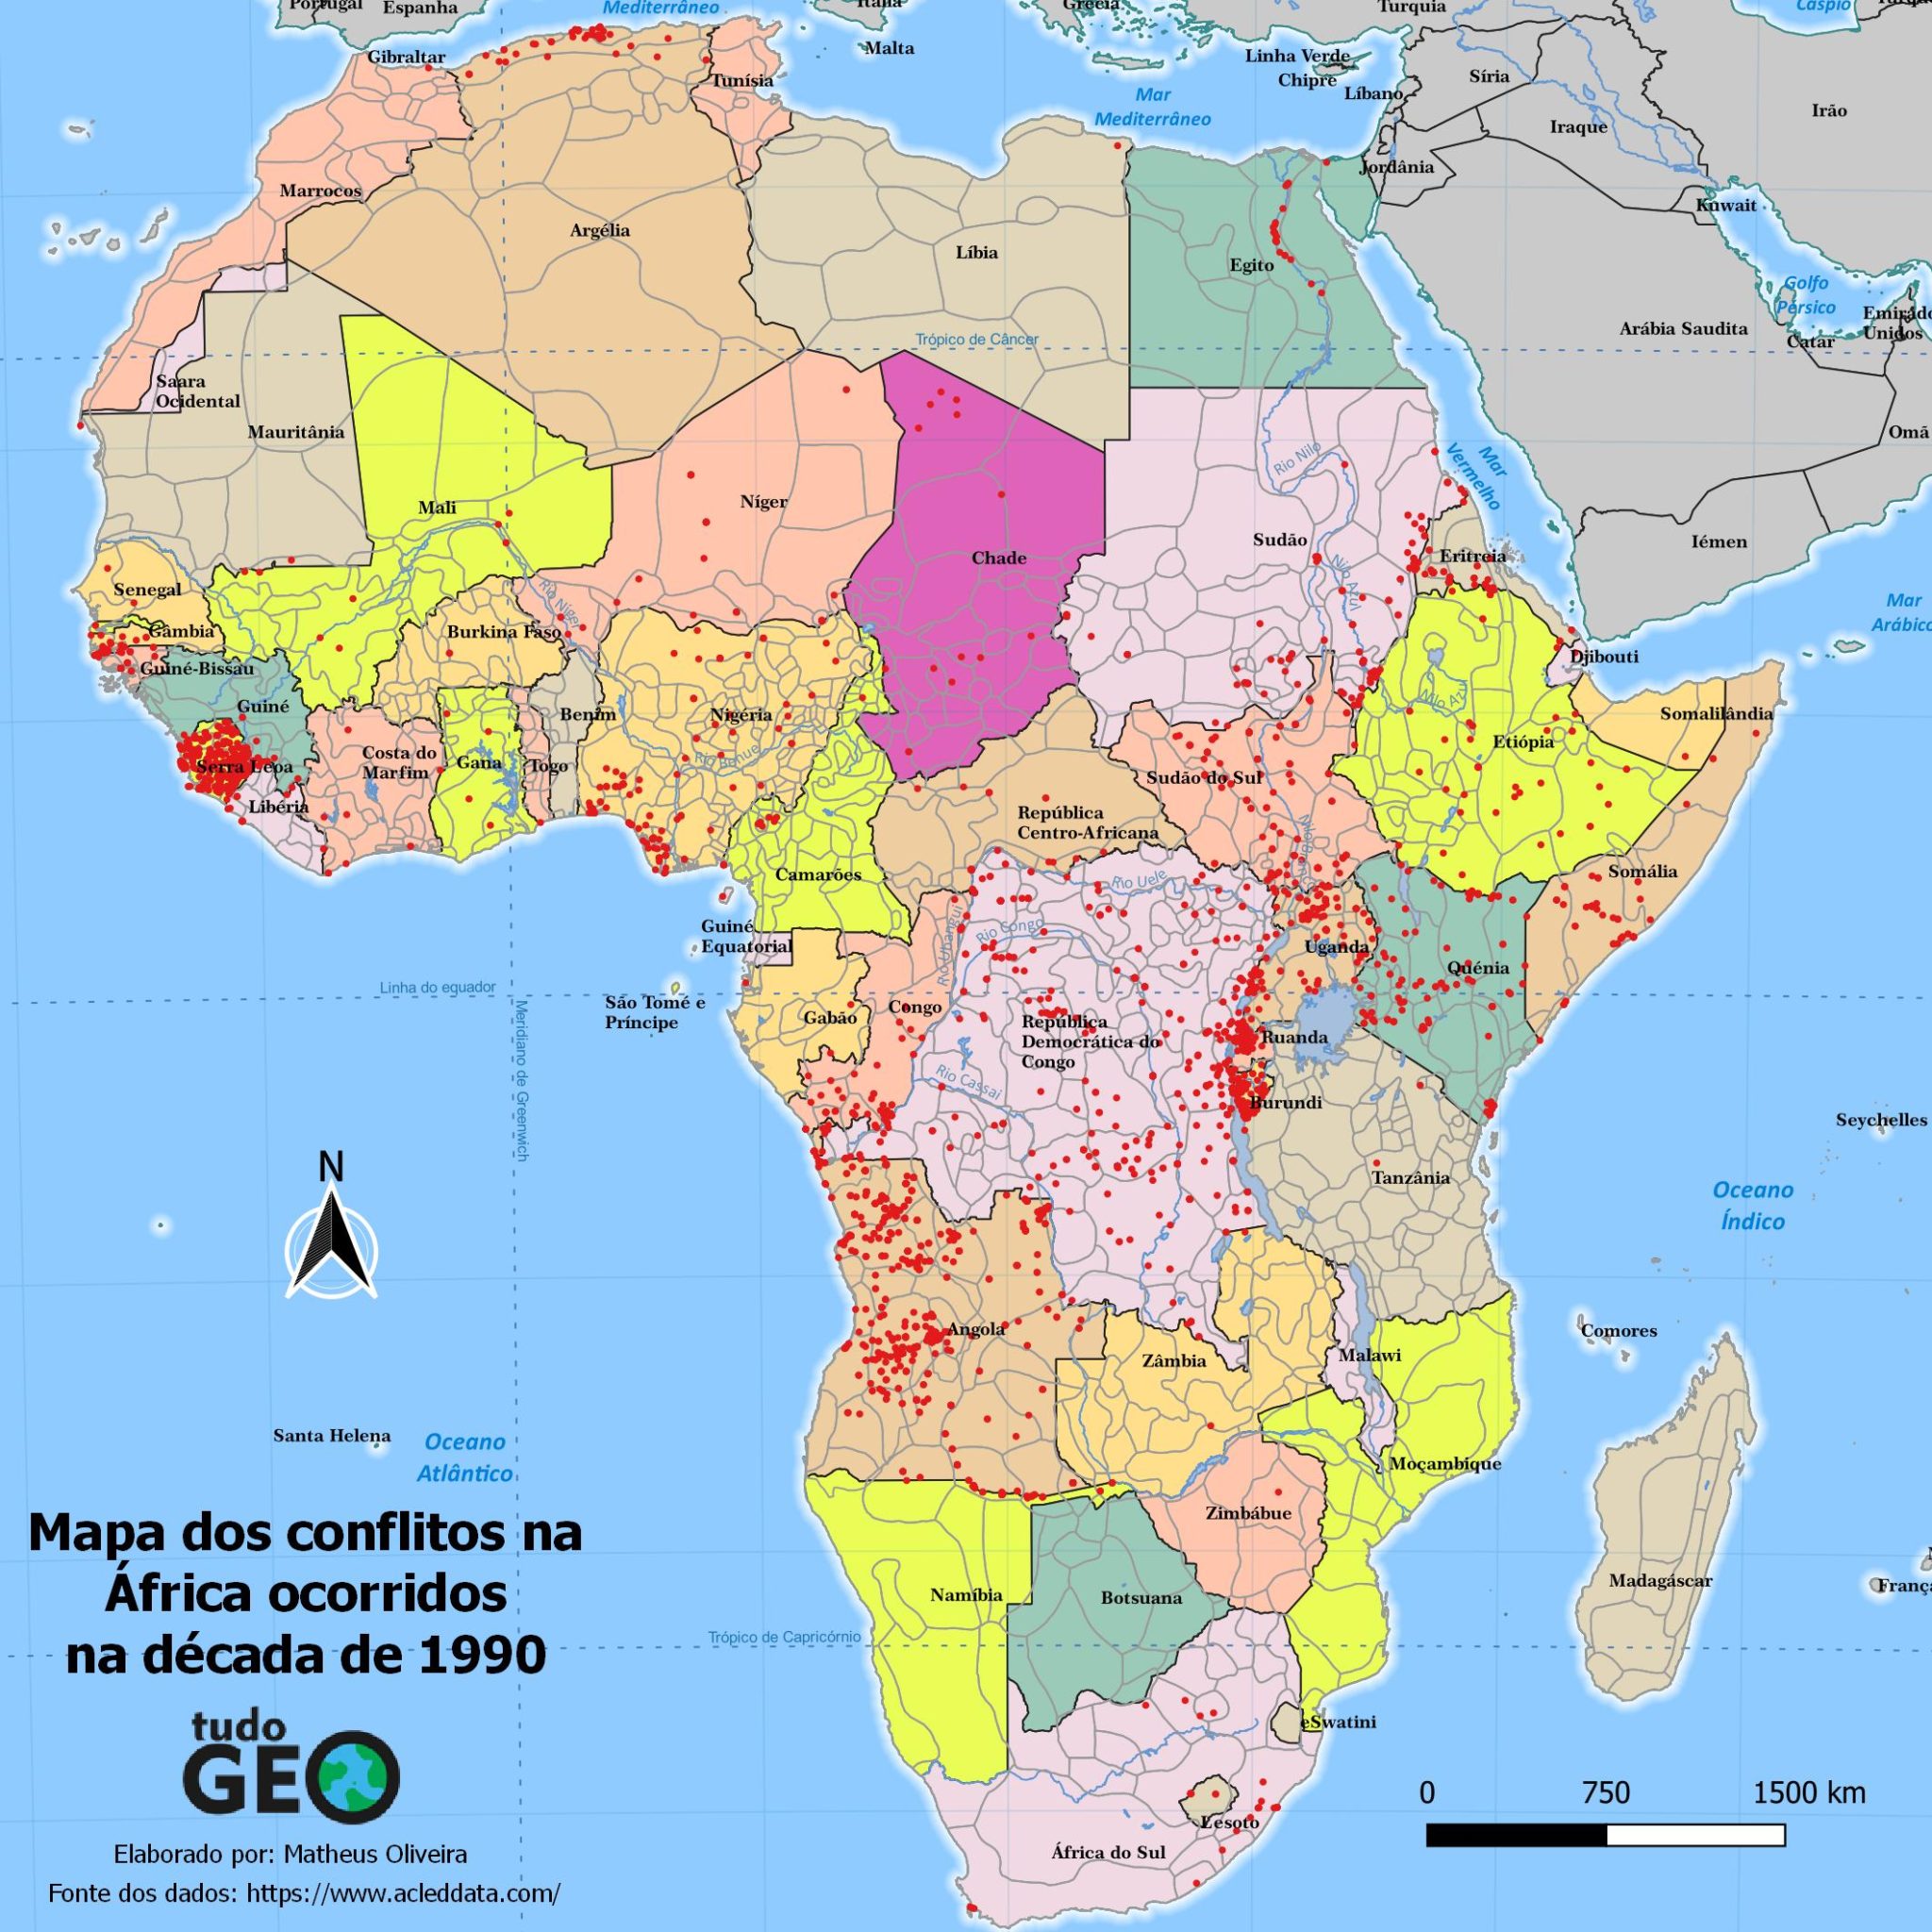 Mapa dos conflitos na África ocorridos na década de 1990